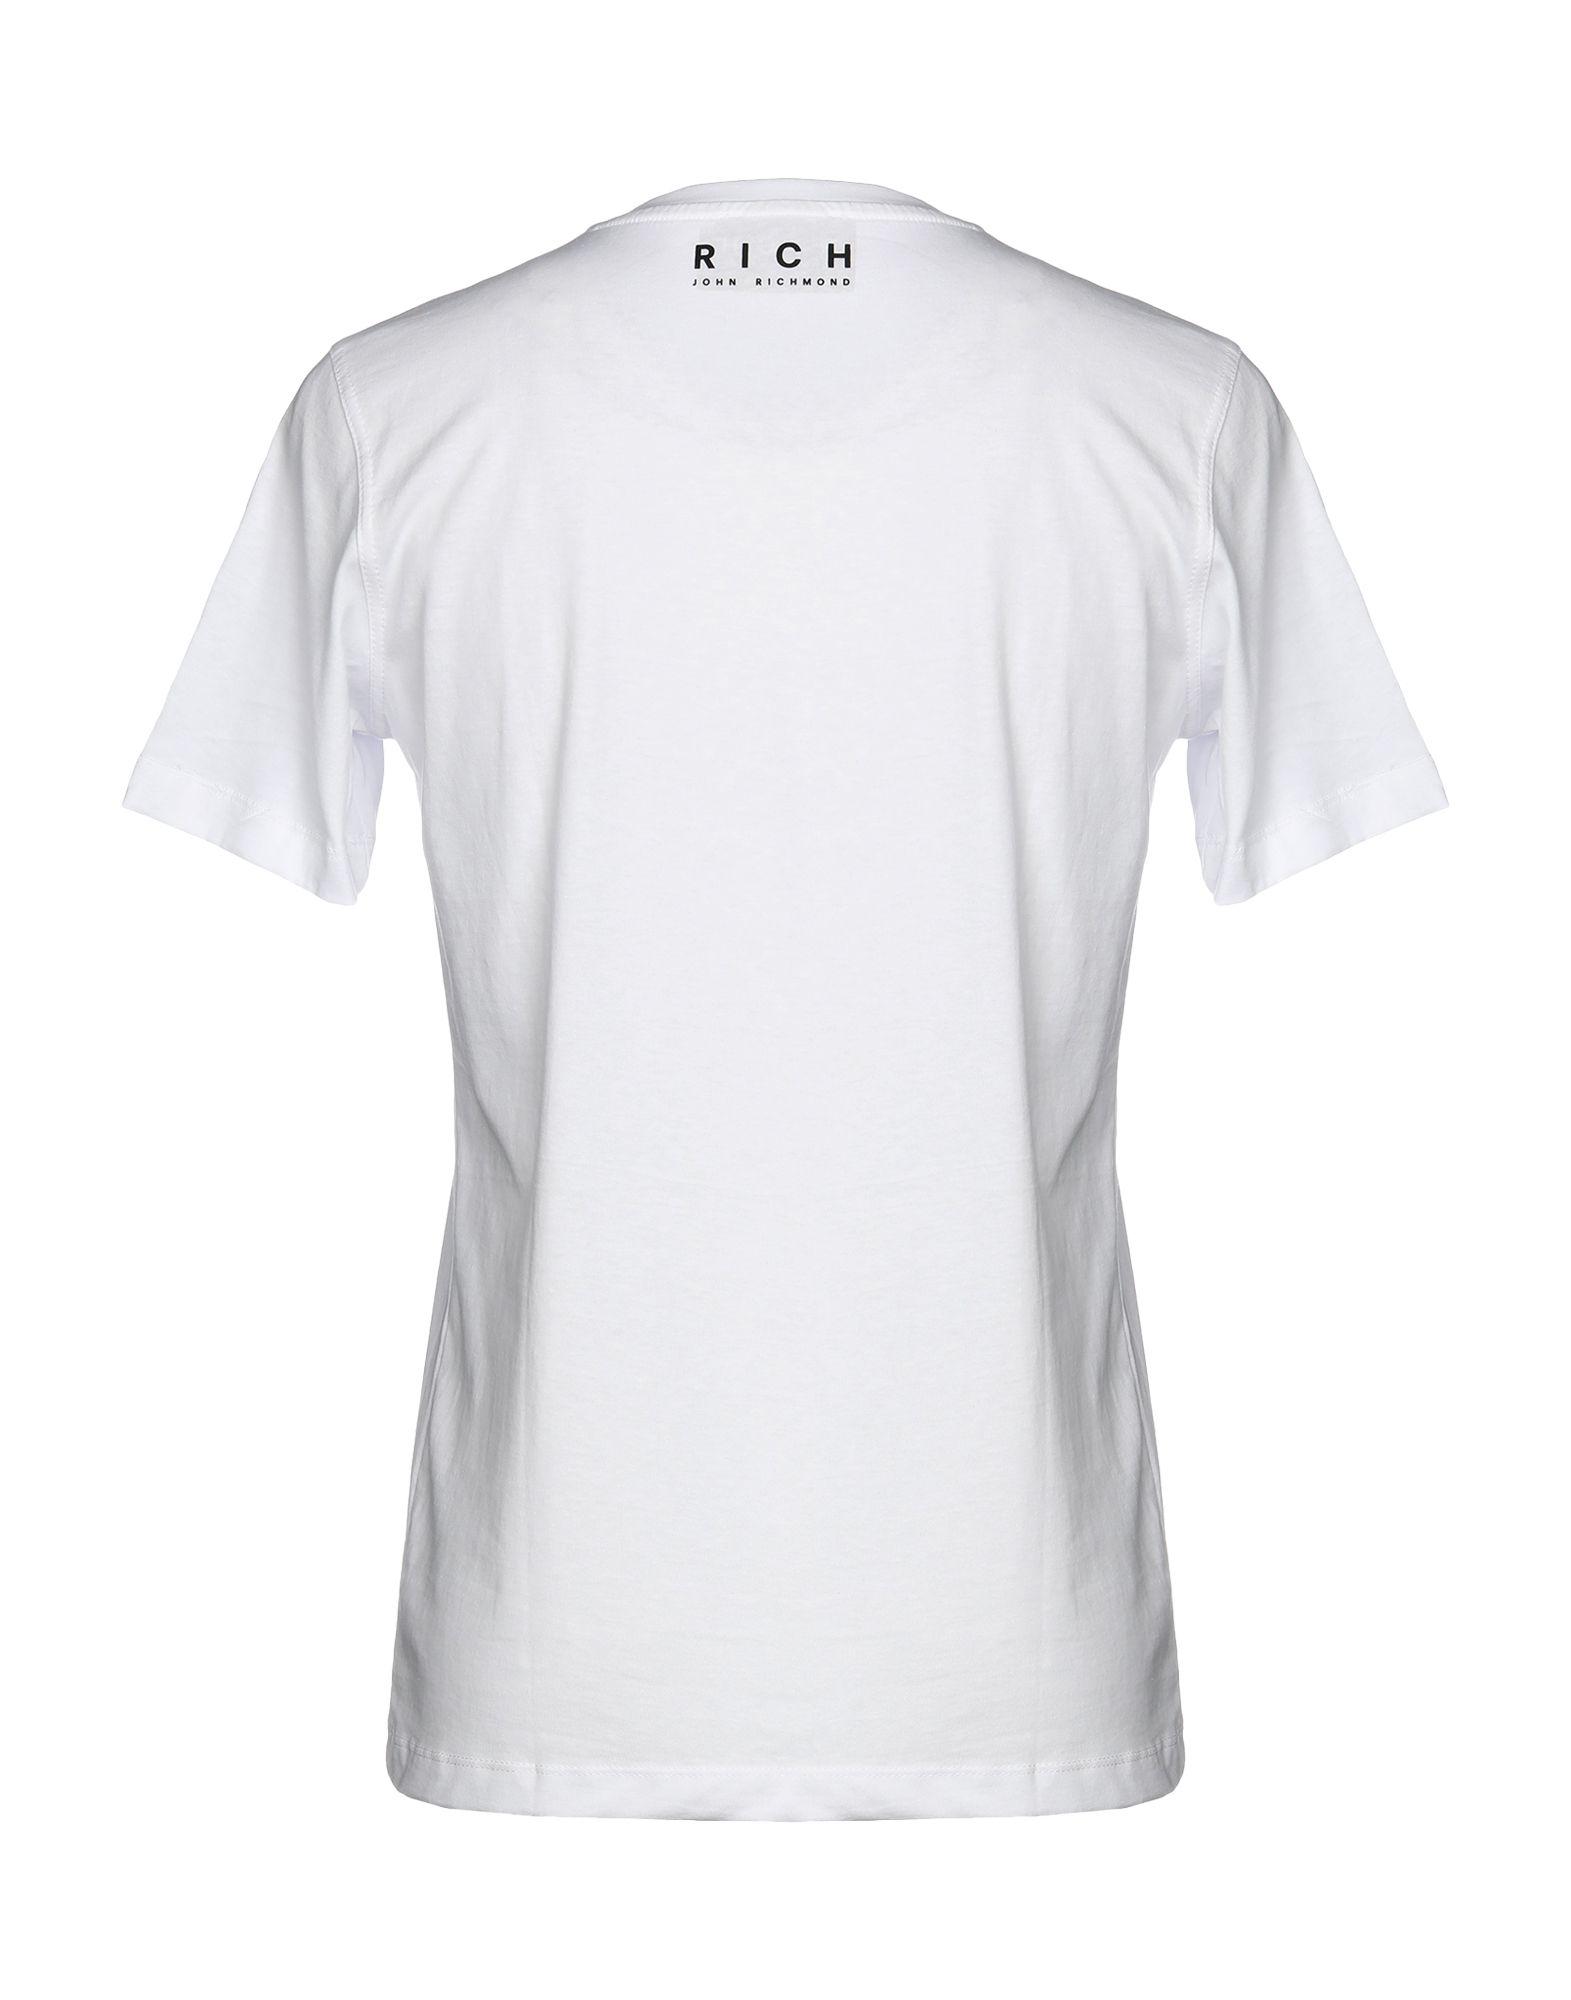 John Richmond T-shirt in White for Men - Lyst